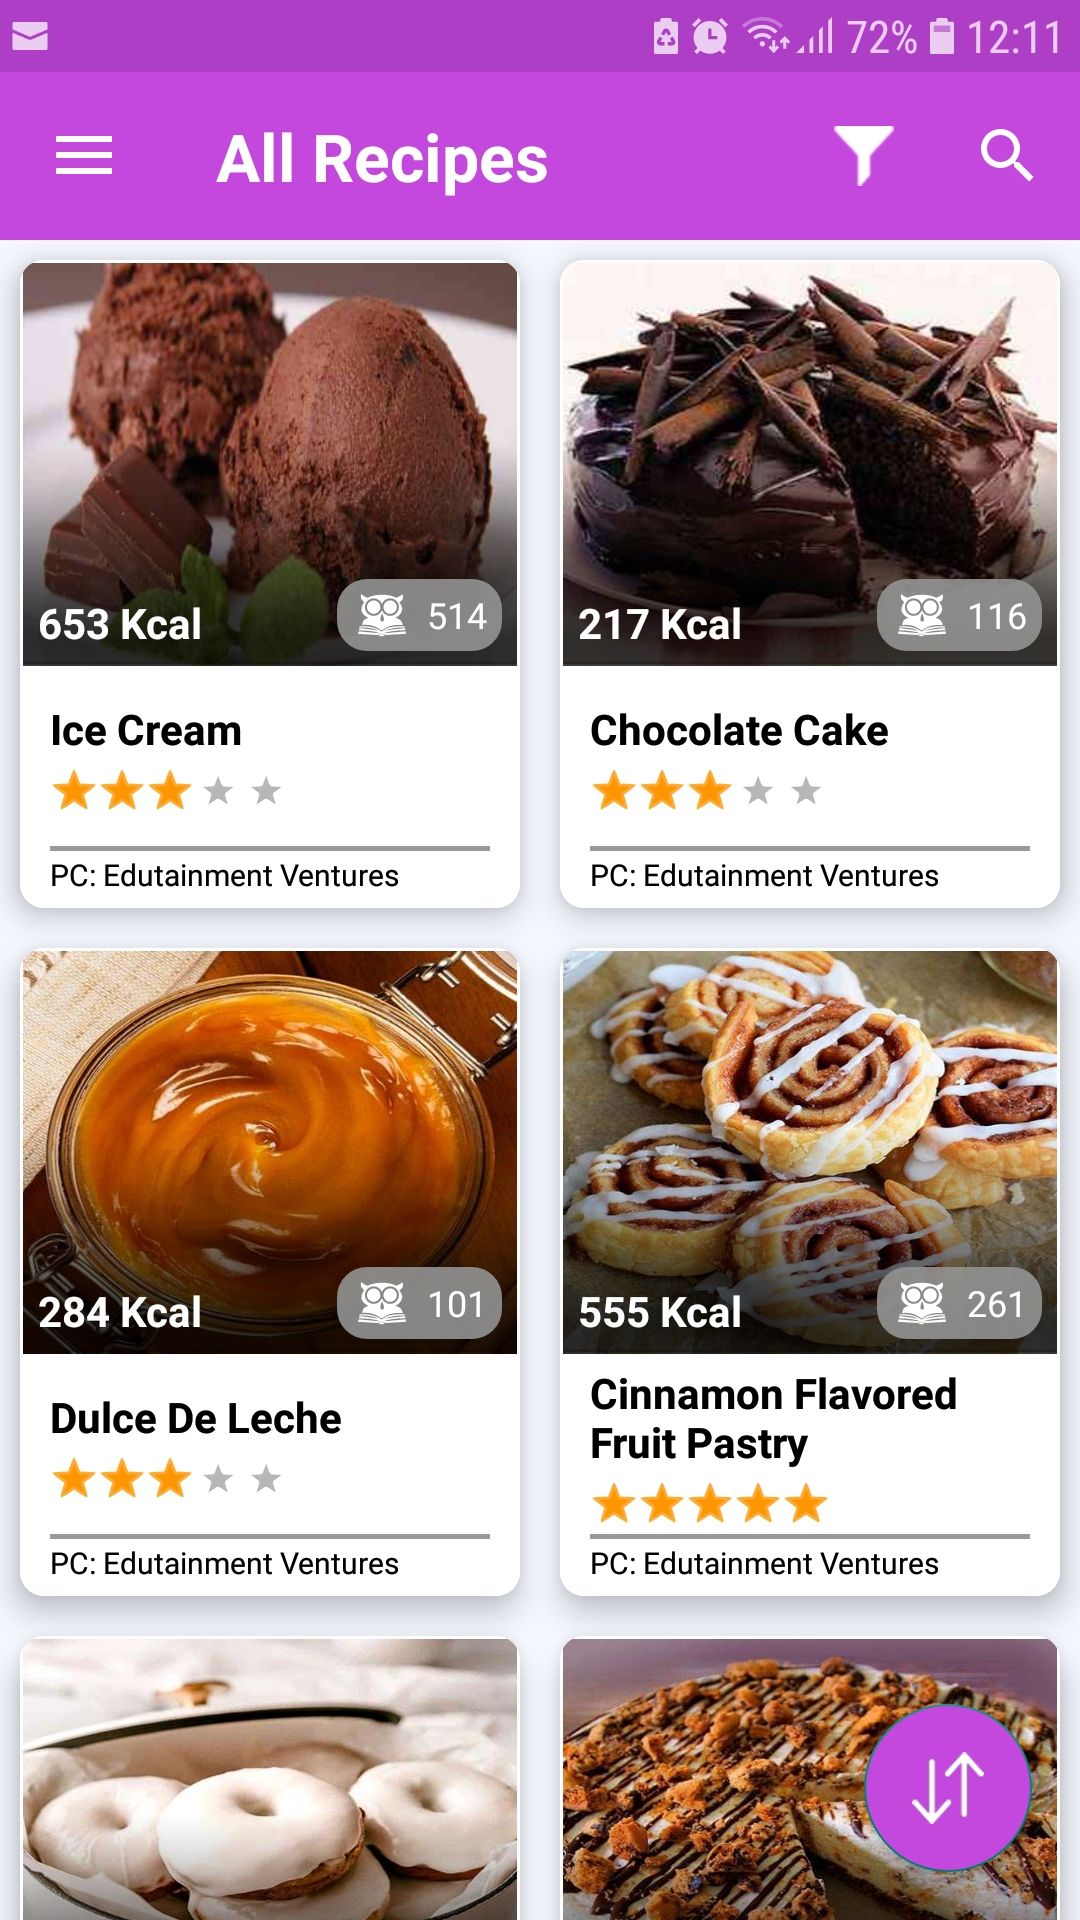 Dessert Recipes mobile recipes app all recipes